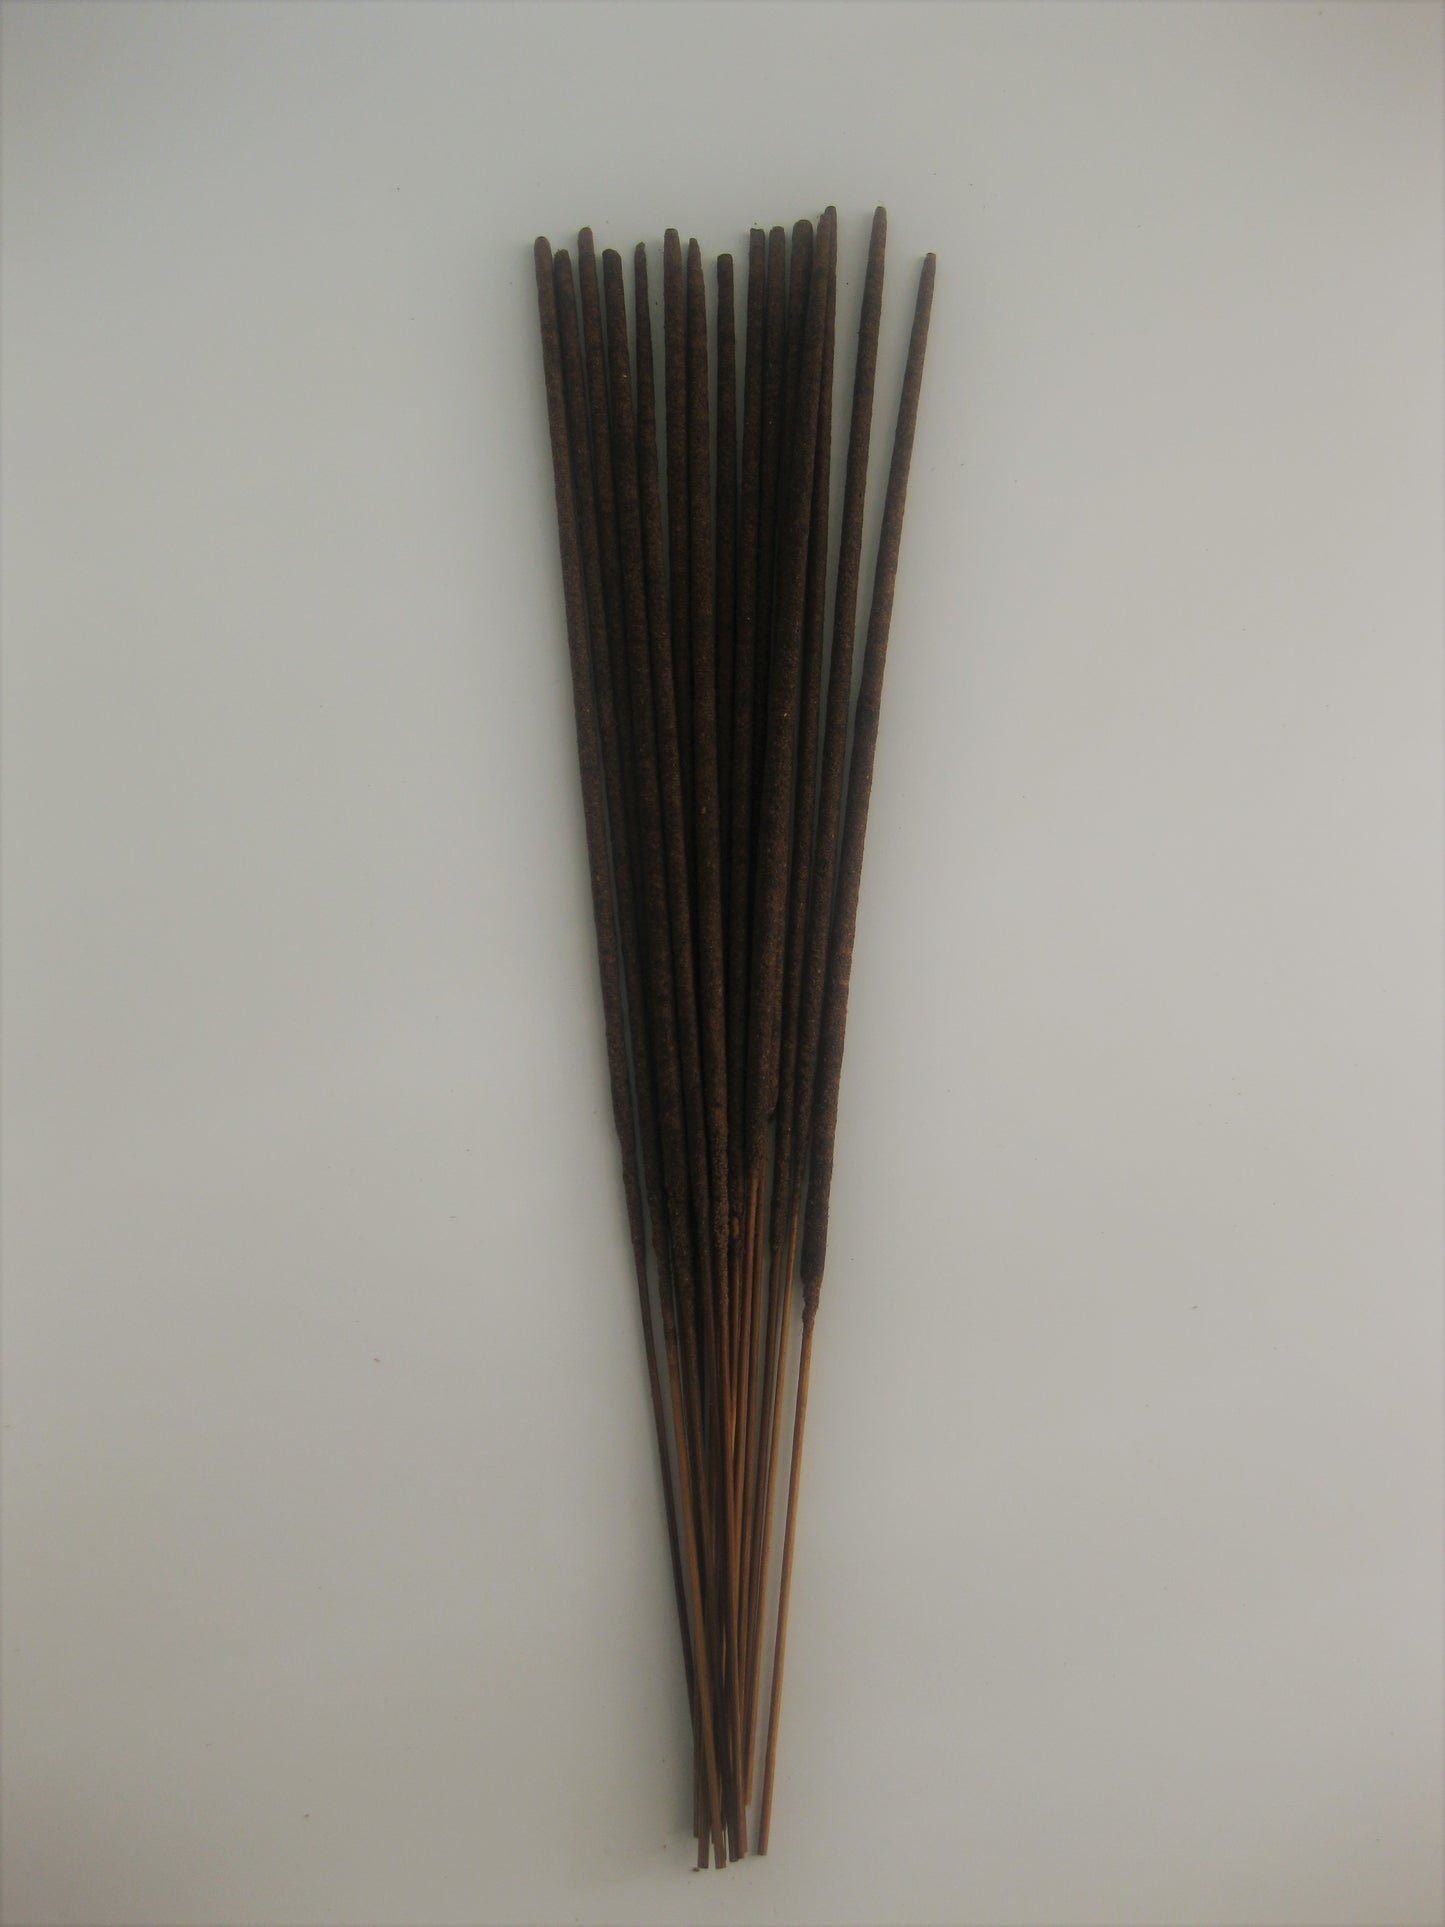 Untamed Incense Sticks